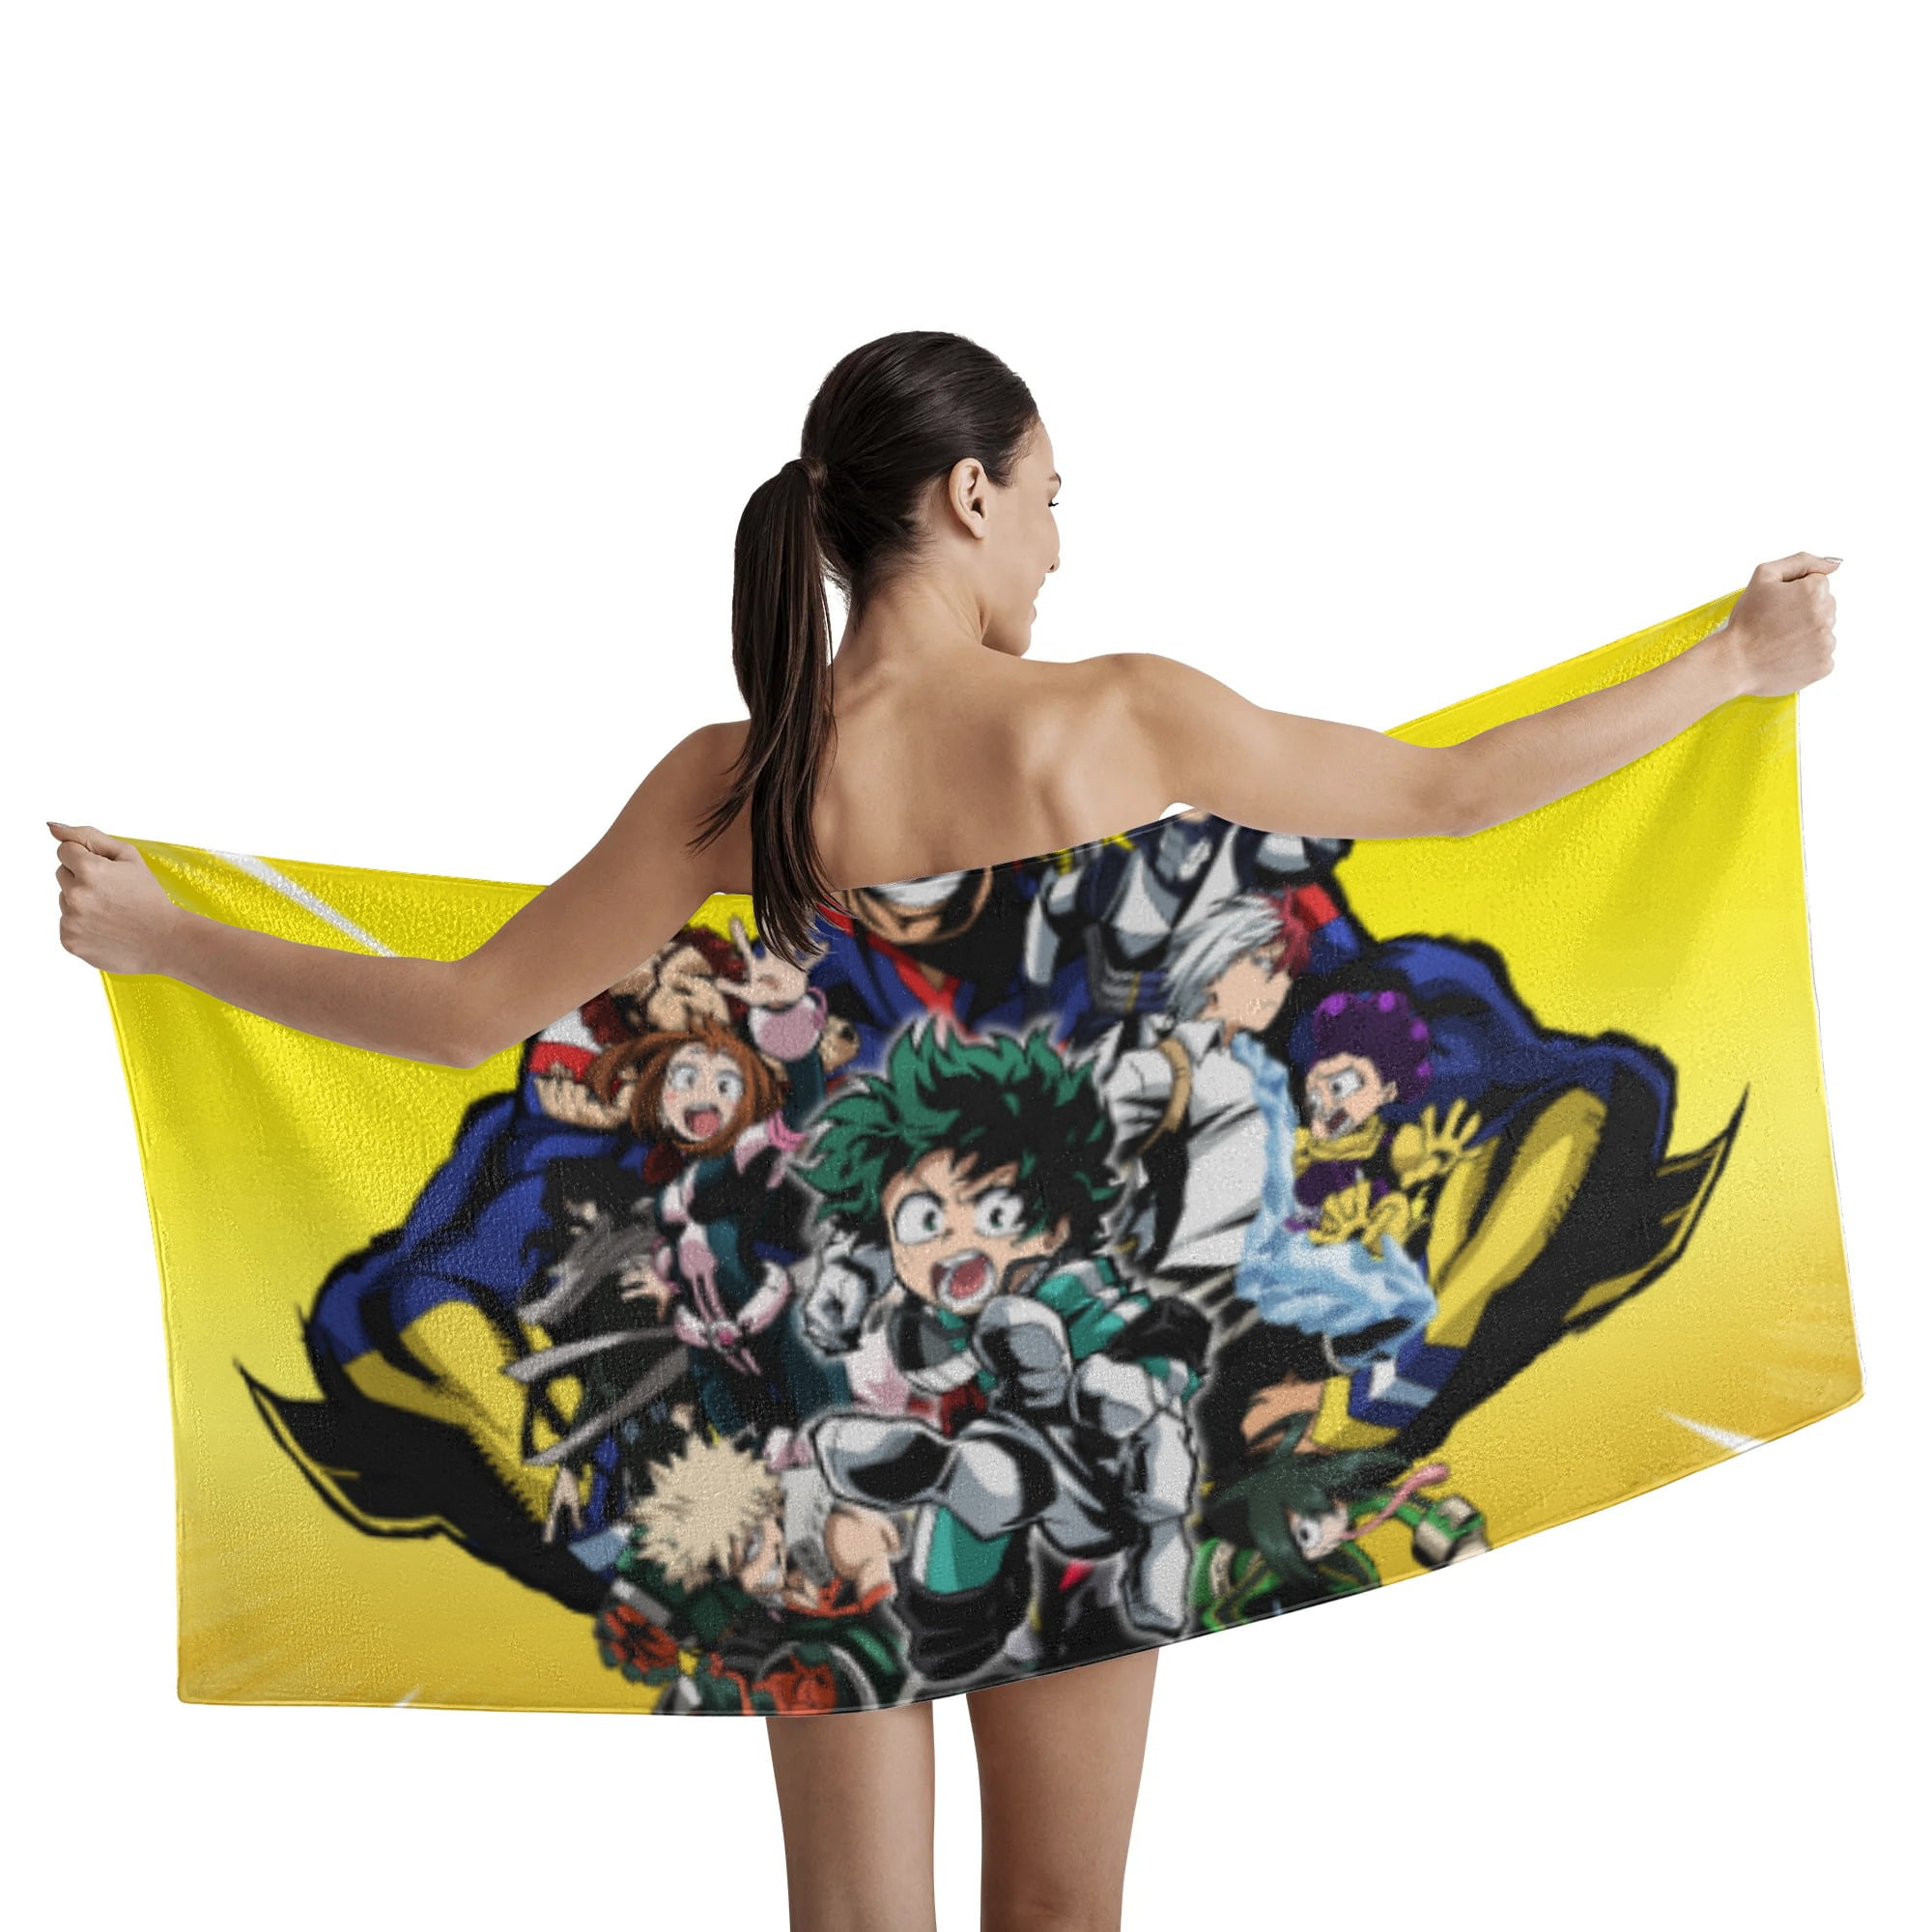 Anime Beach Towel Light Adults Children Women Men Summer Beach Towels  (A03.80 cm x 135 cm) : Amazon.de: Home & Kitchen